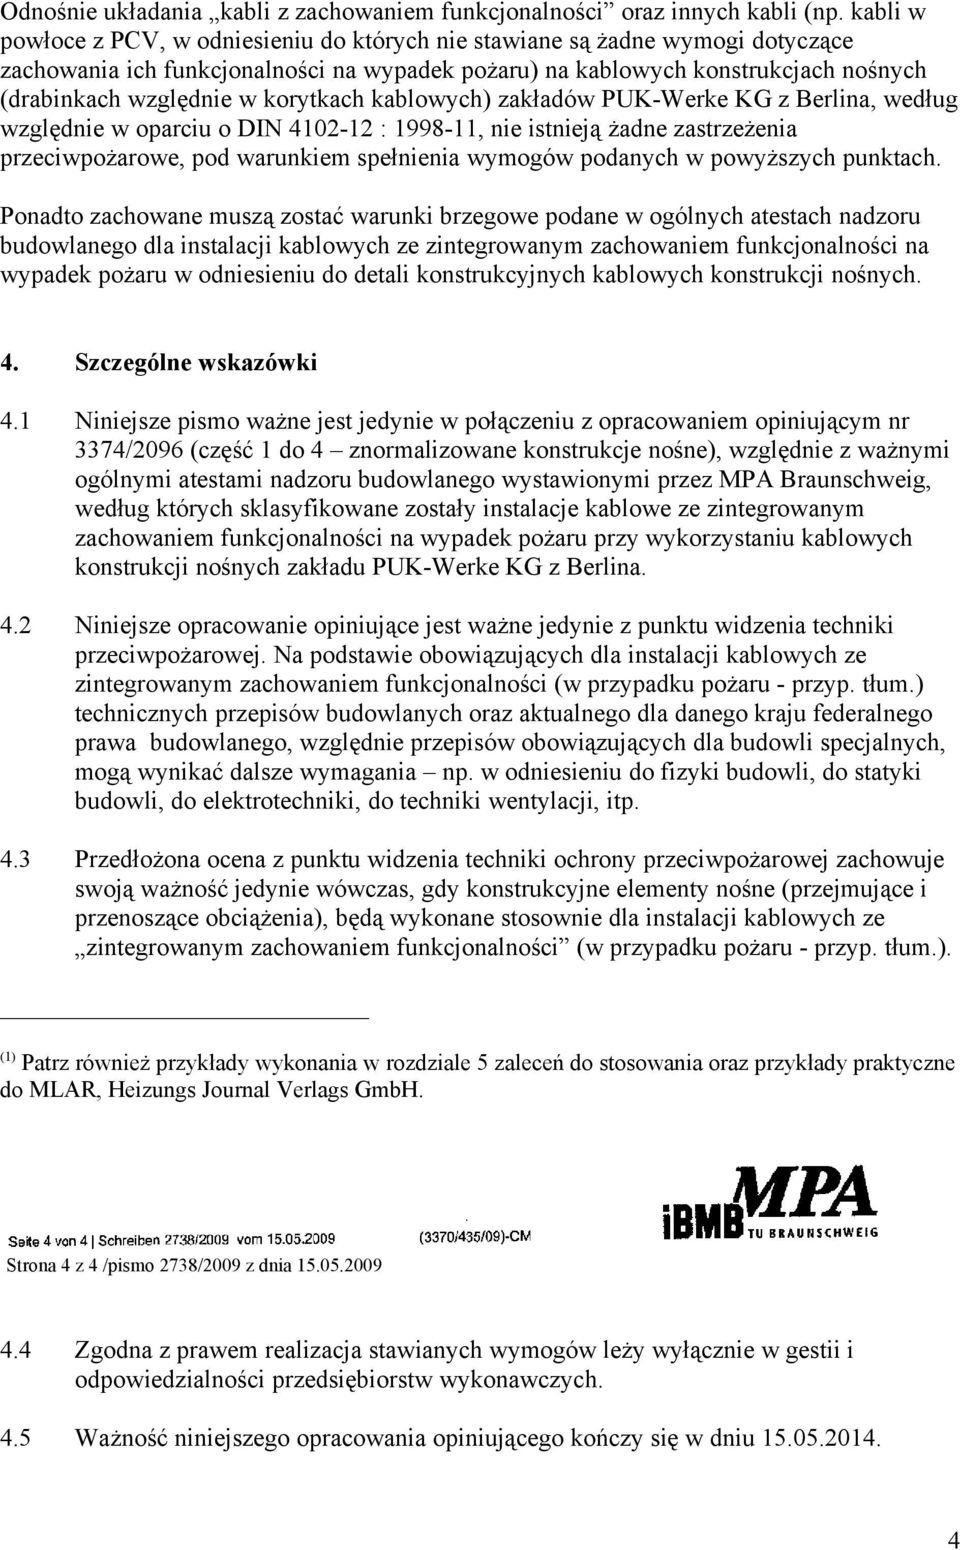 korytkach kablowych) zakładów PUK-Werke KG z Berlina, według względnie w oparciu o DIN 4102-12 : 1998-11, nie istnieją żadne zastrzeżenia przeciwpożarowe, pod warunkiem spełnienia wymogów podanych w